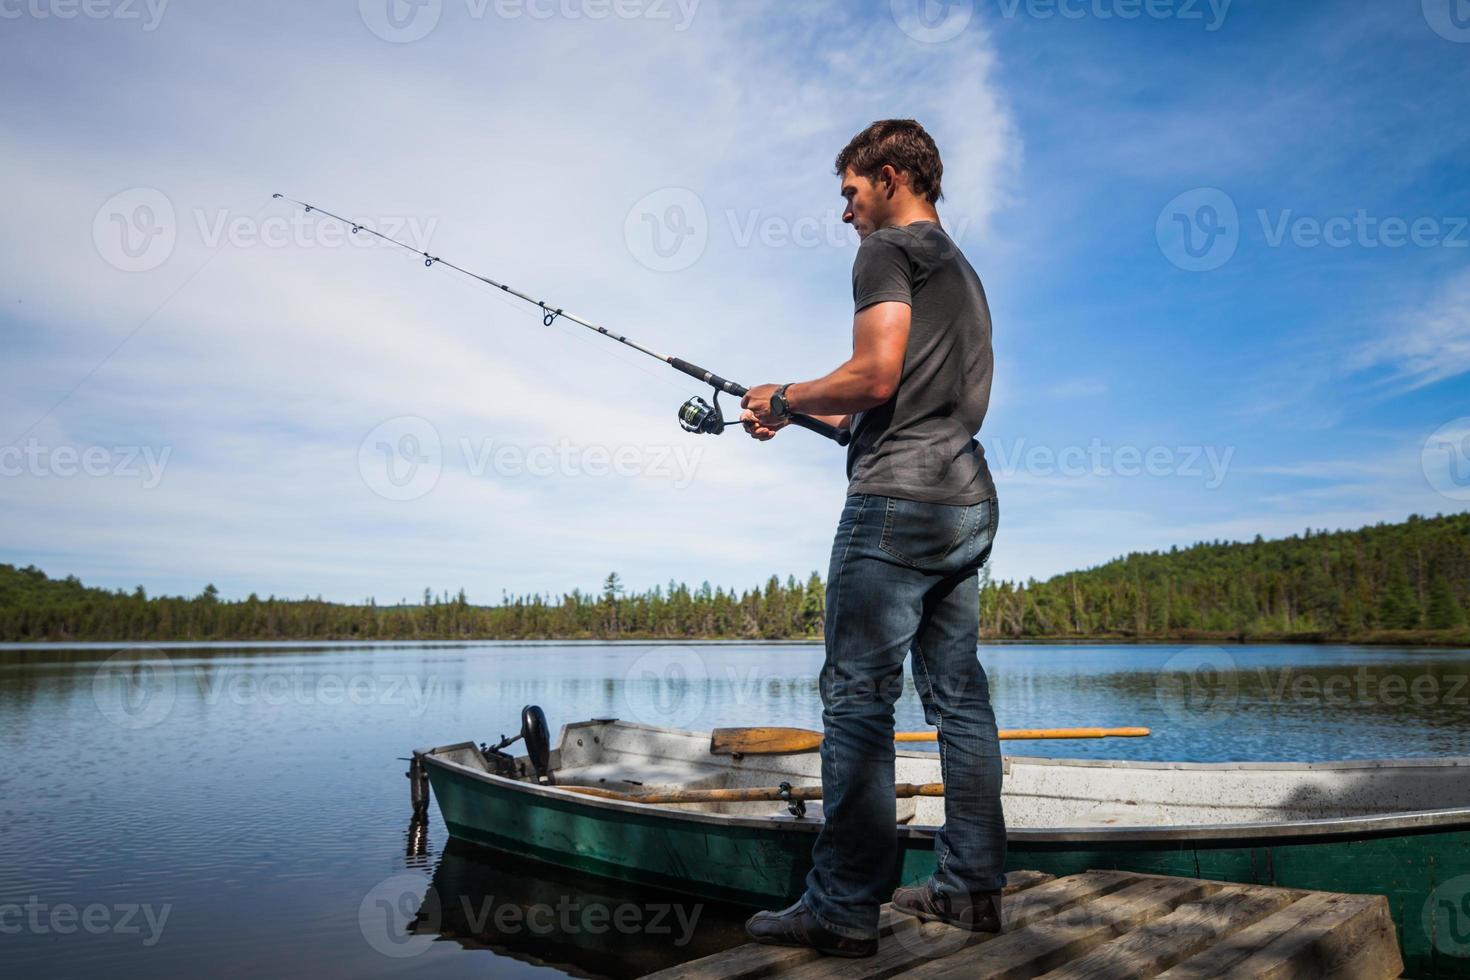 adulto joven pescando en un lago tranquilo foto